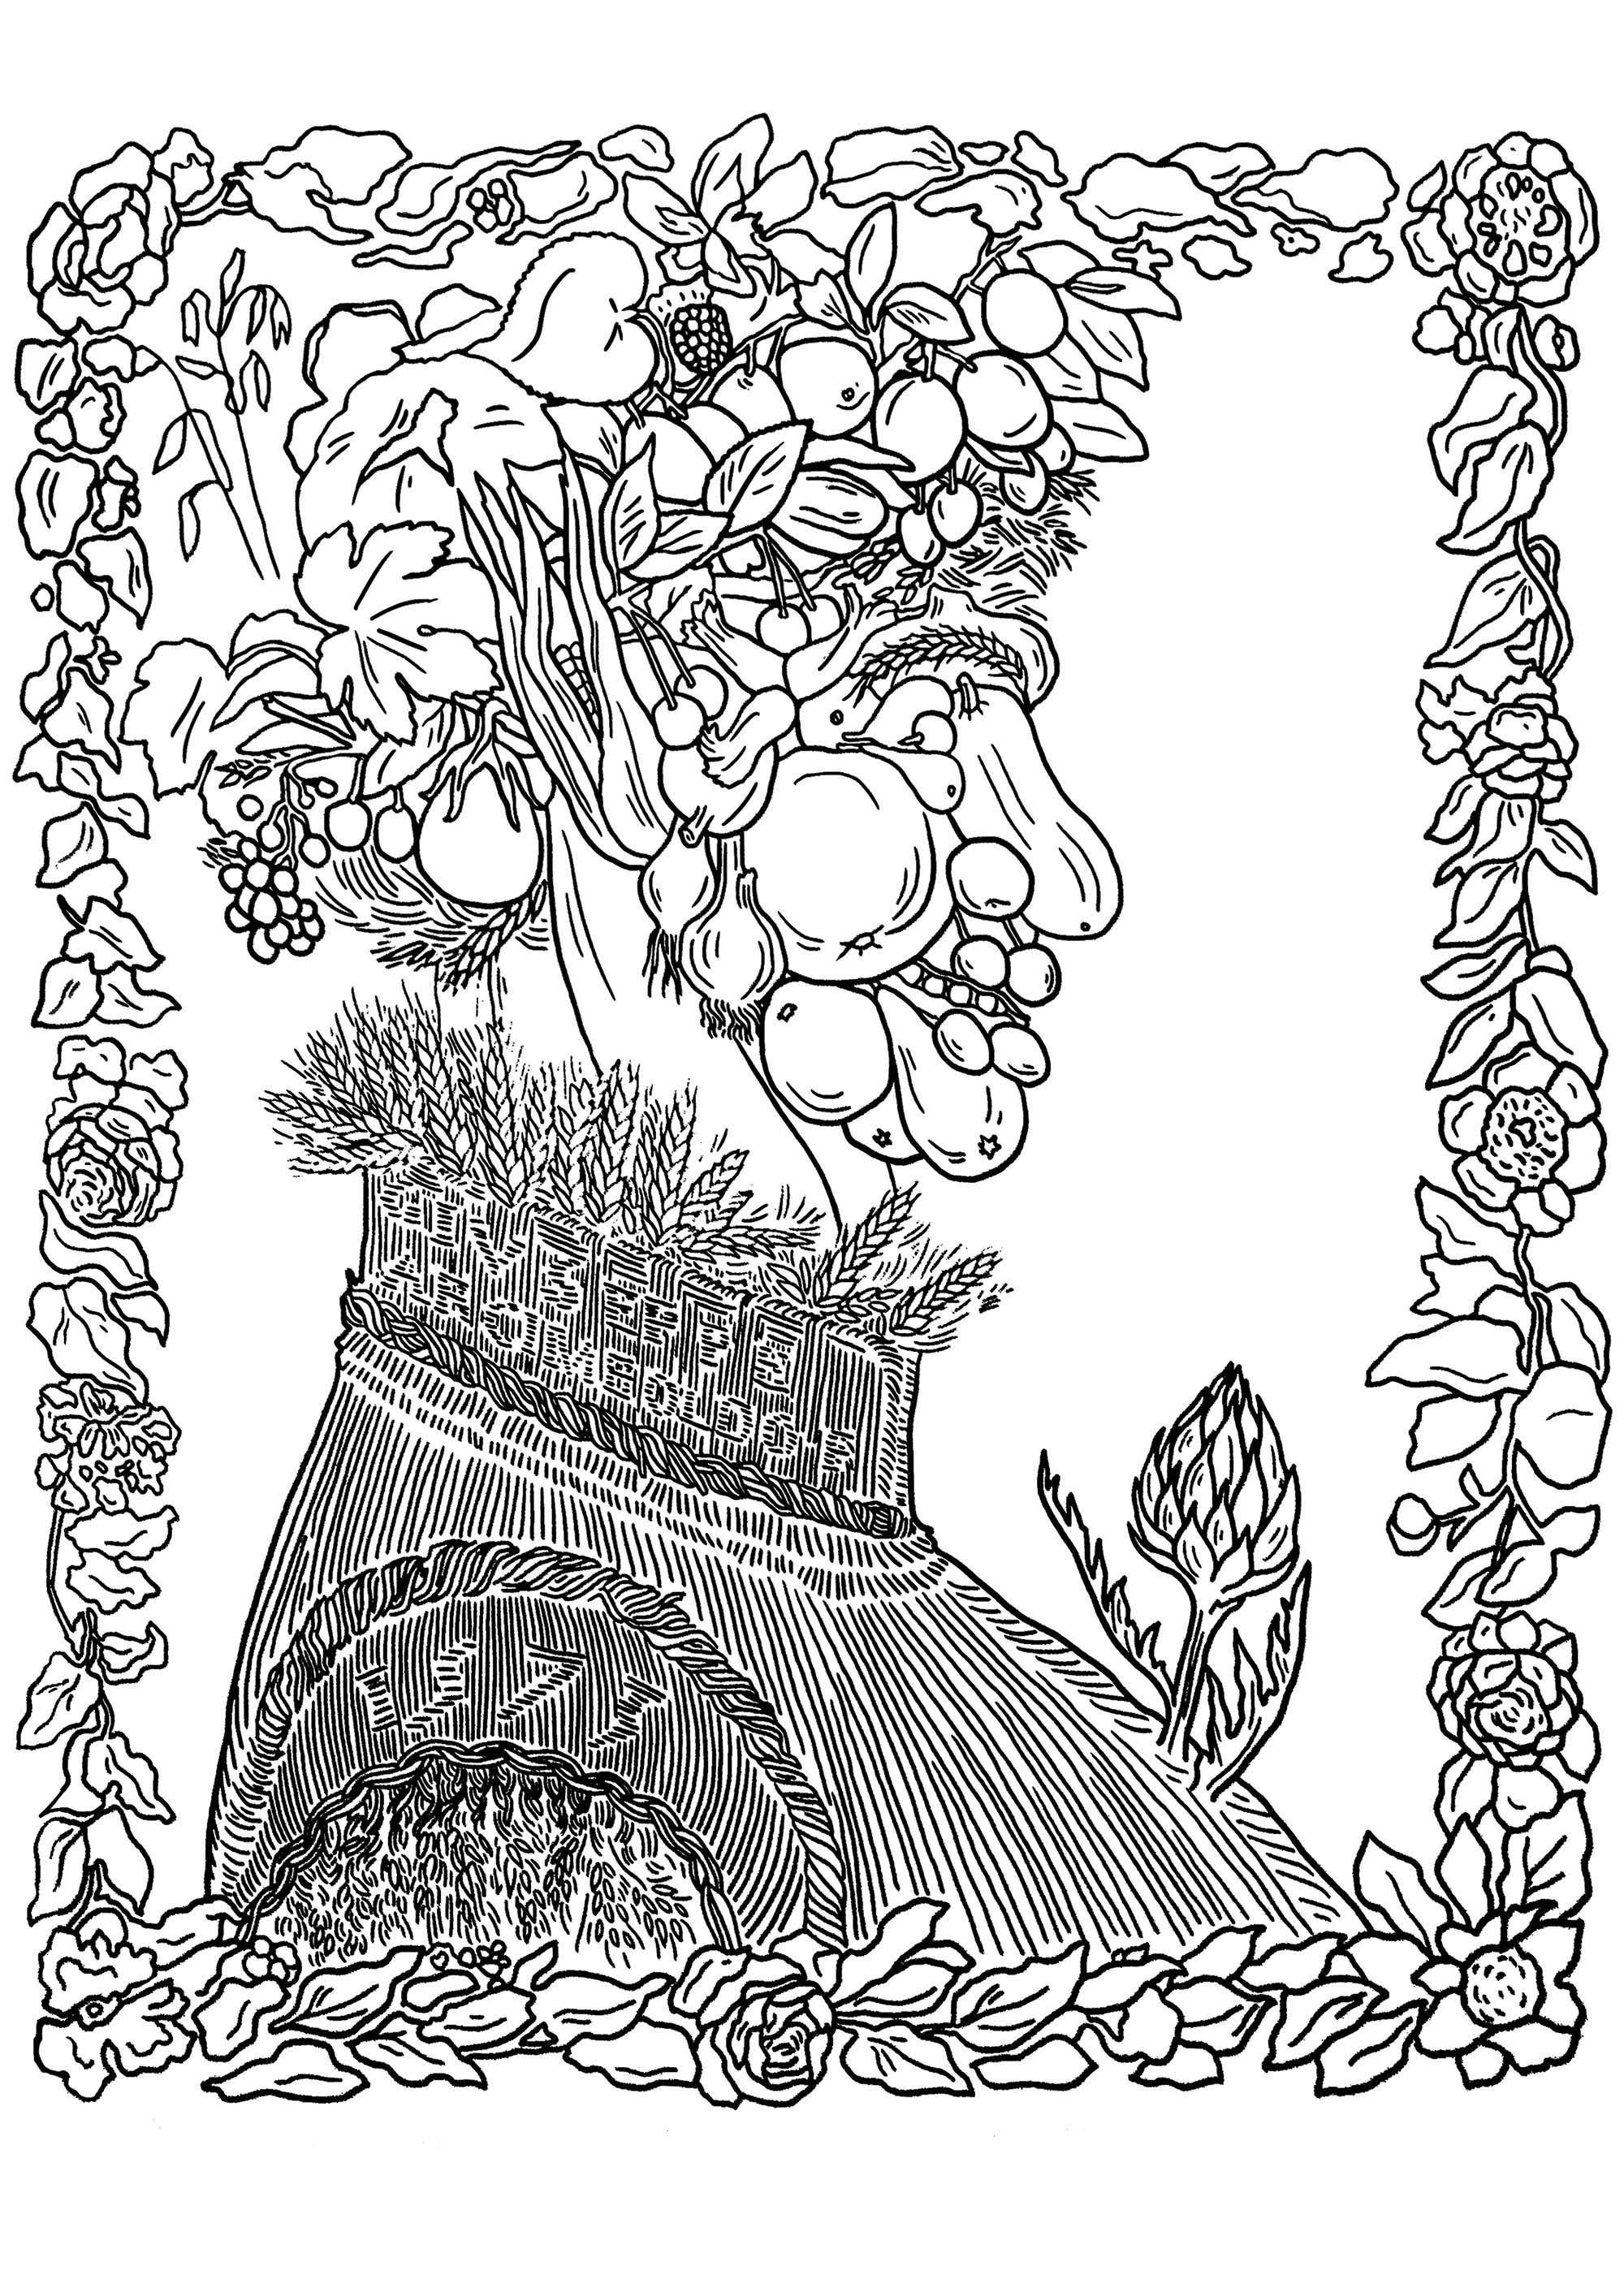 Giuseppe Arcimboldo - verão (1573). O 'verão' de Giuseppe Arcimboldo faz parte de uma série de quatro retratos sazonais, criados no final do século XVI. Nesta obra de arte, Arcimboldo compõe um rosto inteiramente a partir de vários elementos de verão, como frutos, legumes e flores.A disposição imaginativa e intrincada destes elementos forma um retrato caprichoso e intrigante, mostrando o talento excecional de Arcimboldo para criar representações lúdicas e simbólicas das estações do ano.